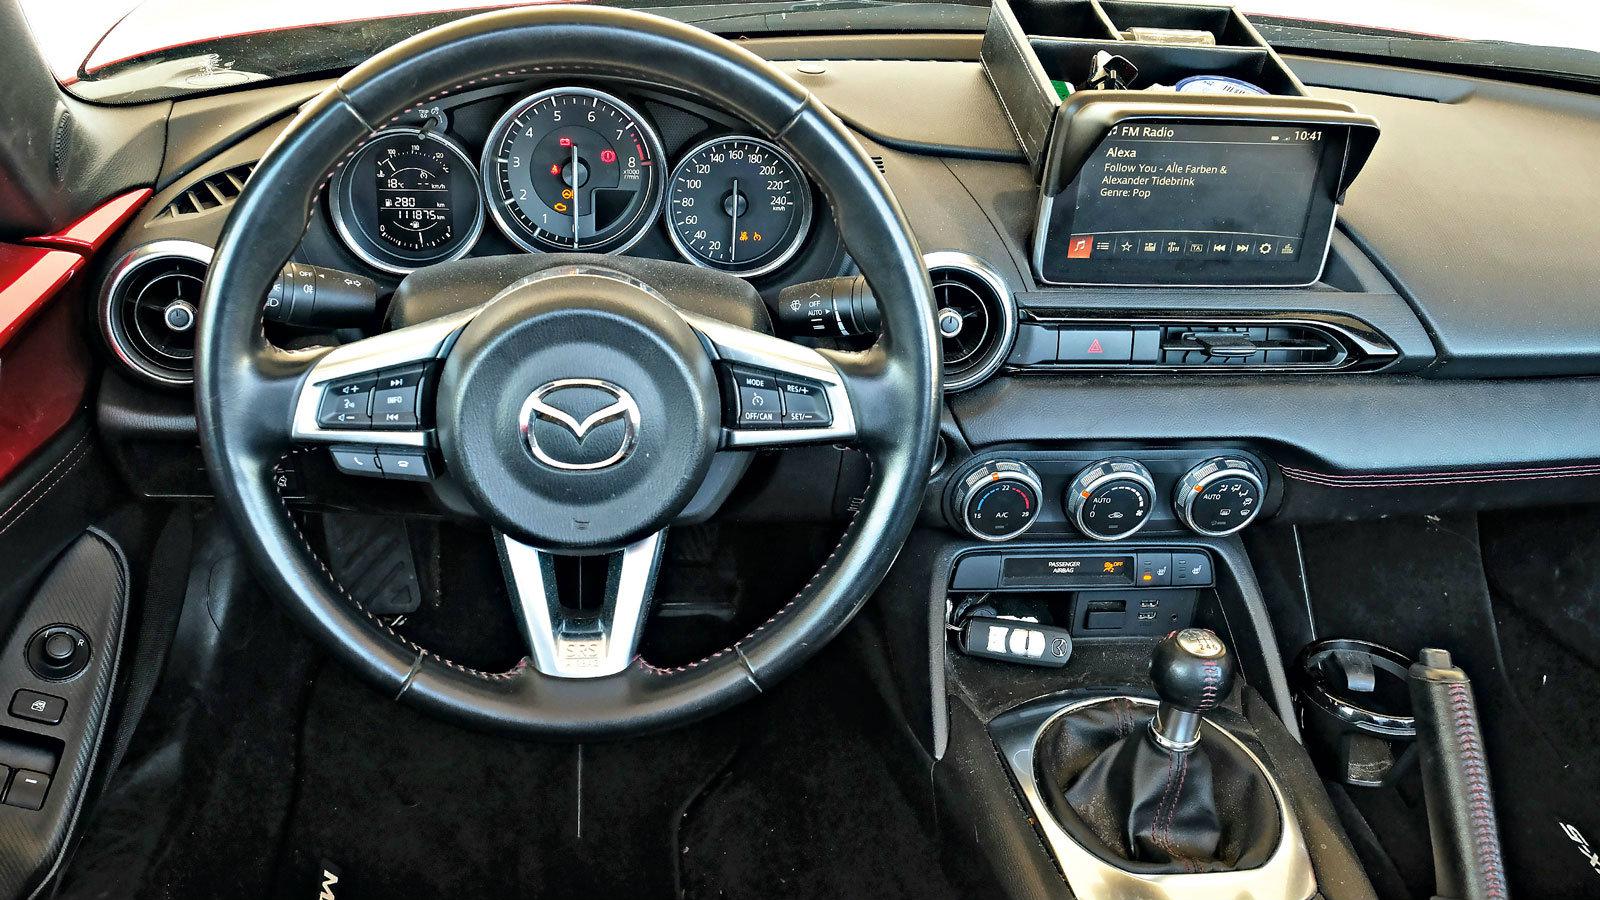 Πώς τα πήγε το νέο Mazda MX-5 στο τεστ των 100.000χλμ;